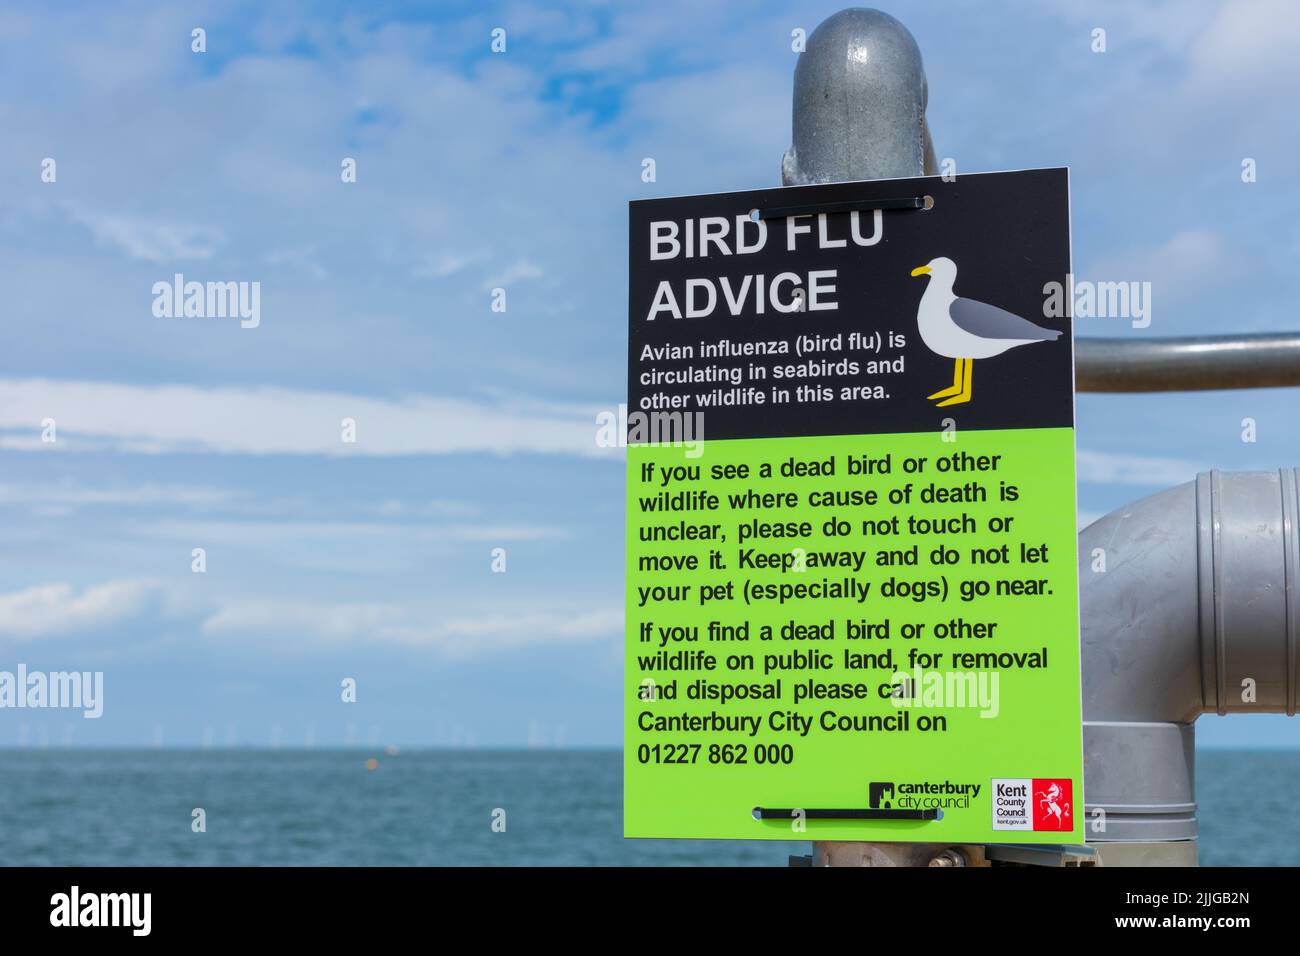 Herne Bay, Kent, Regno Unito: Segnali di avviso per l'influenza aviaria di recente costituzione sulla scia di 104 casi confermati di influenza aviaria (H5N1) nel Regno Unito. Foto Stock